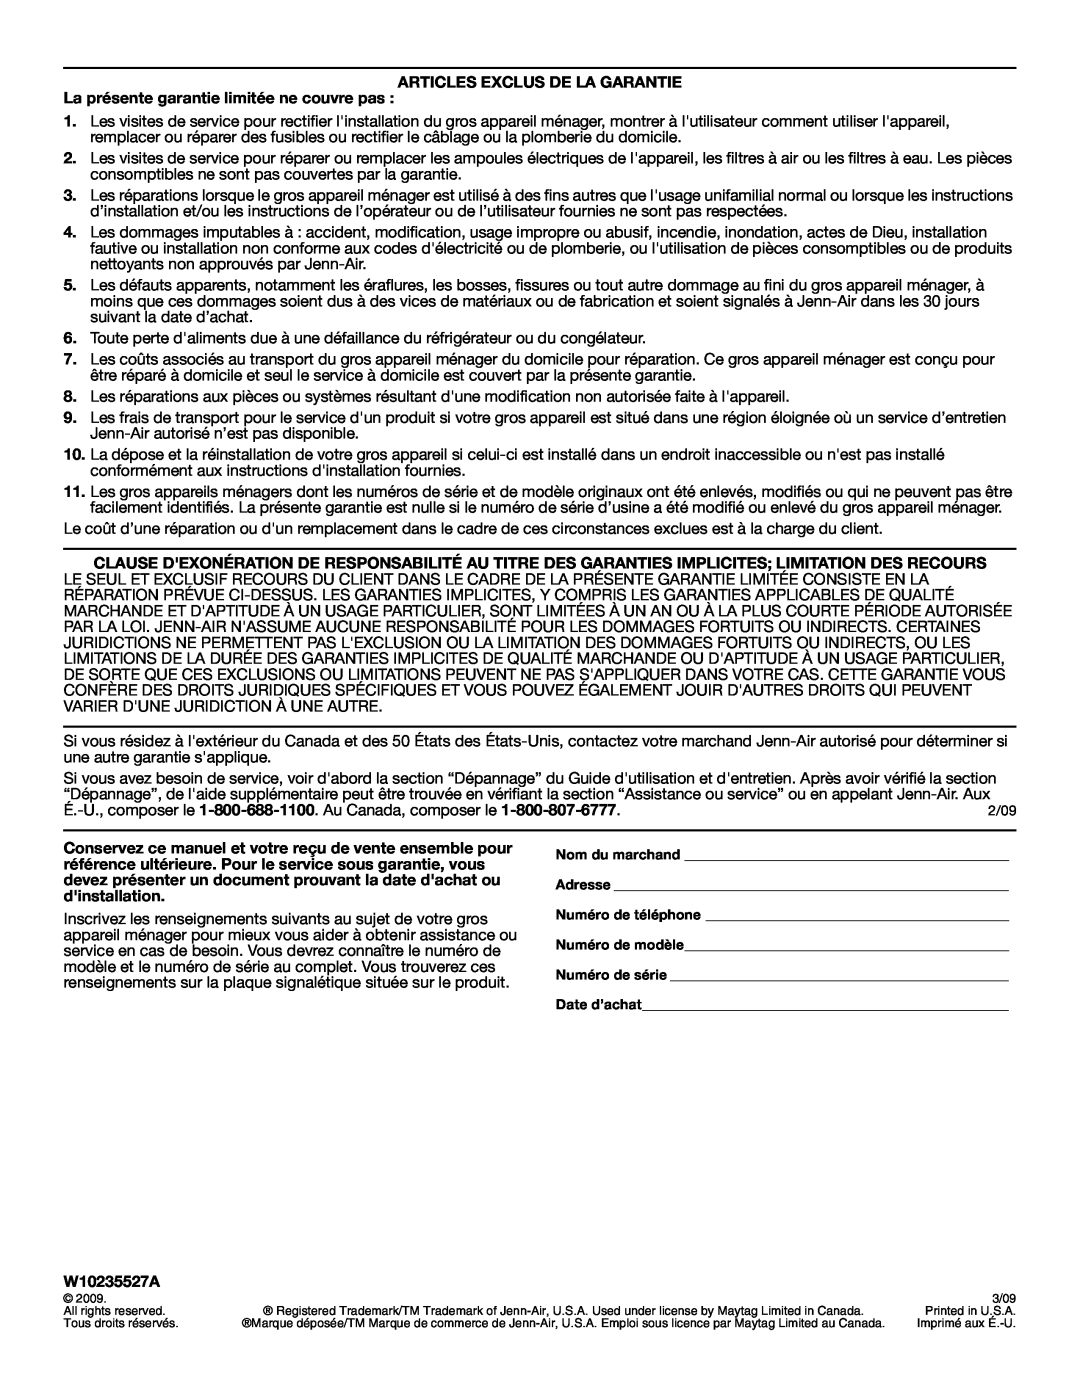 Jenn-Air JGS9900 manual Articles Exclus De La Garantie, La présente garantie limitée ne couvre pas, W10235527A 